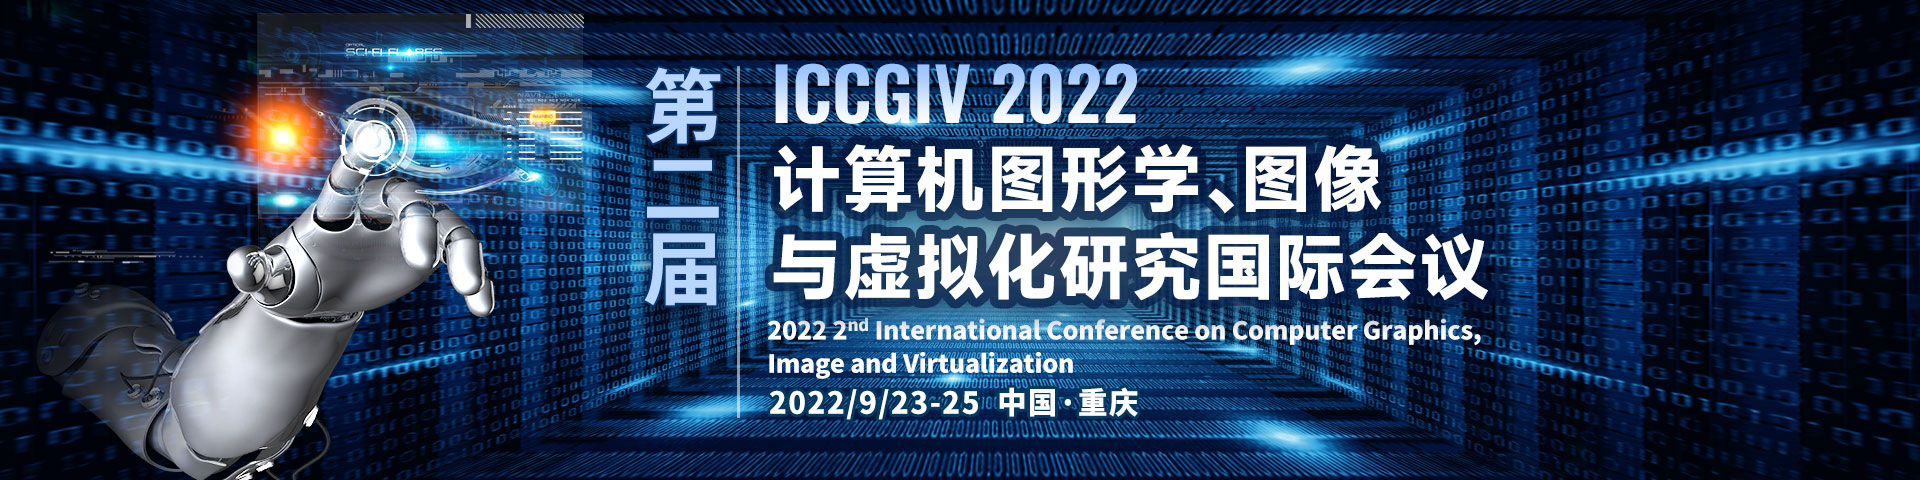 9月-重慶站-ICCGIV-艾思平臺上線平臺1920x480.jpg